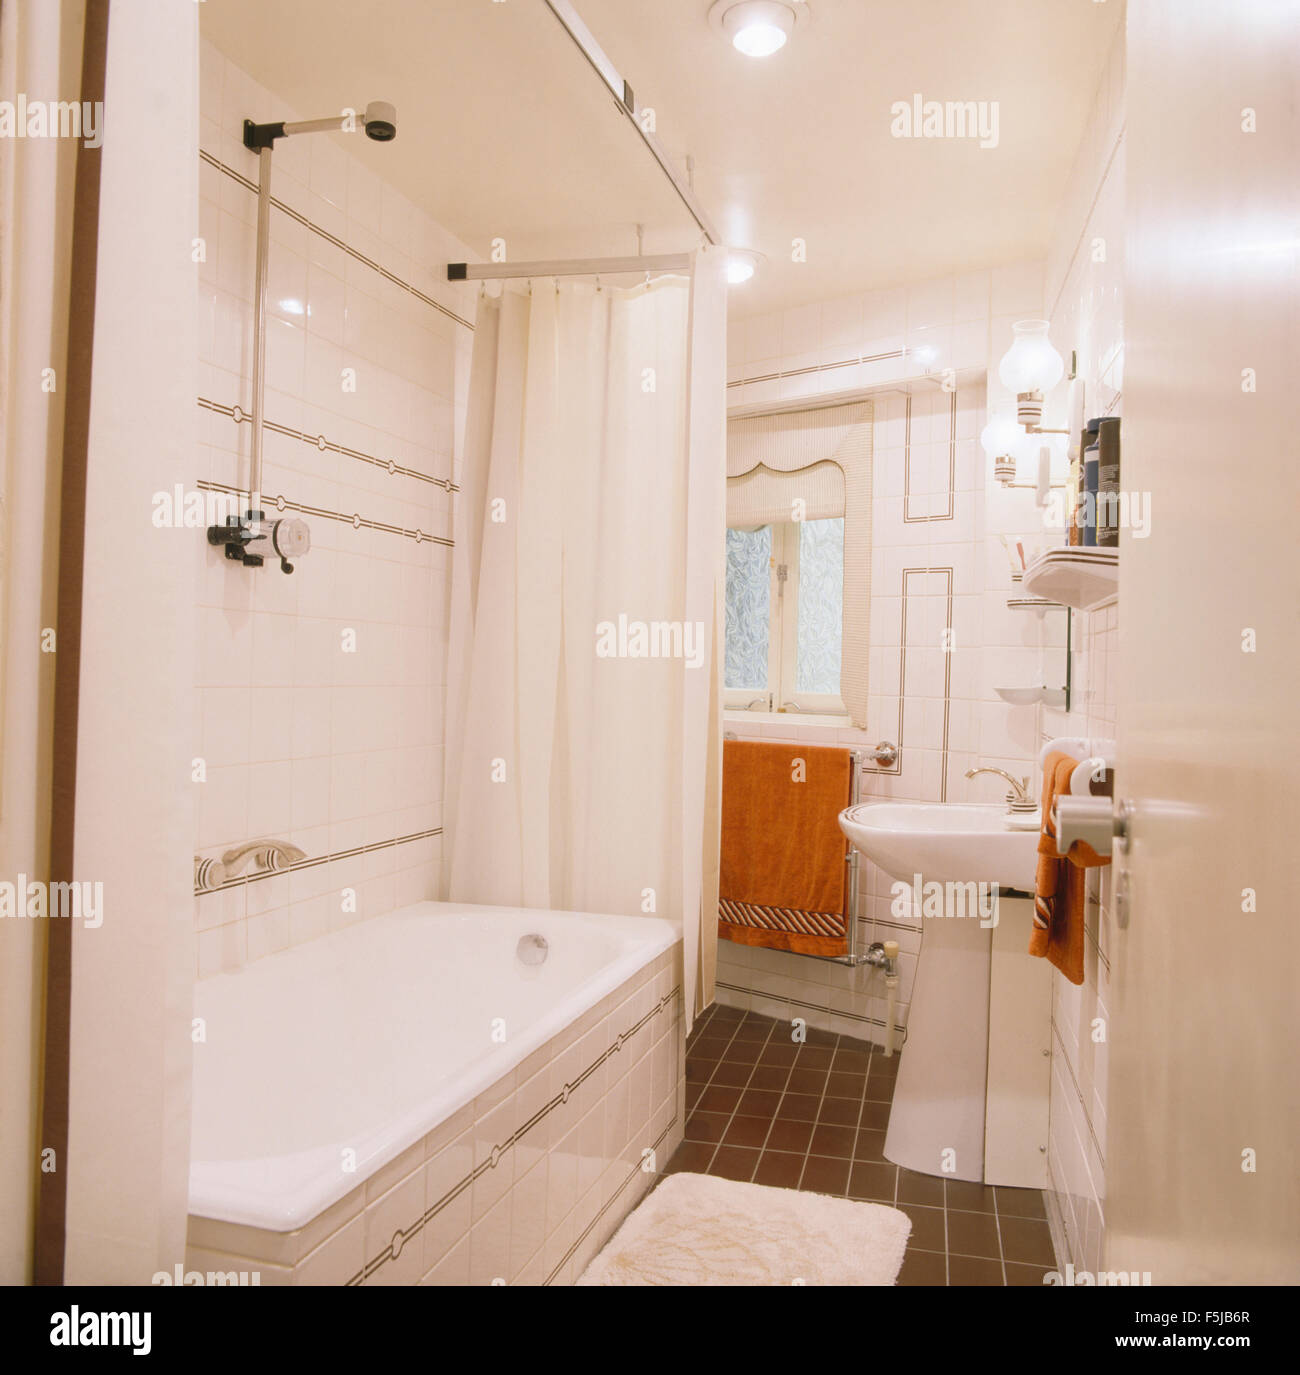 Cortina de ducha blanca fotografías e imágenes de alta resolución - Alamy